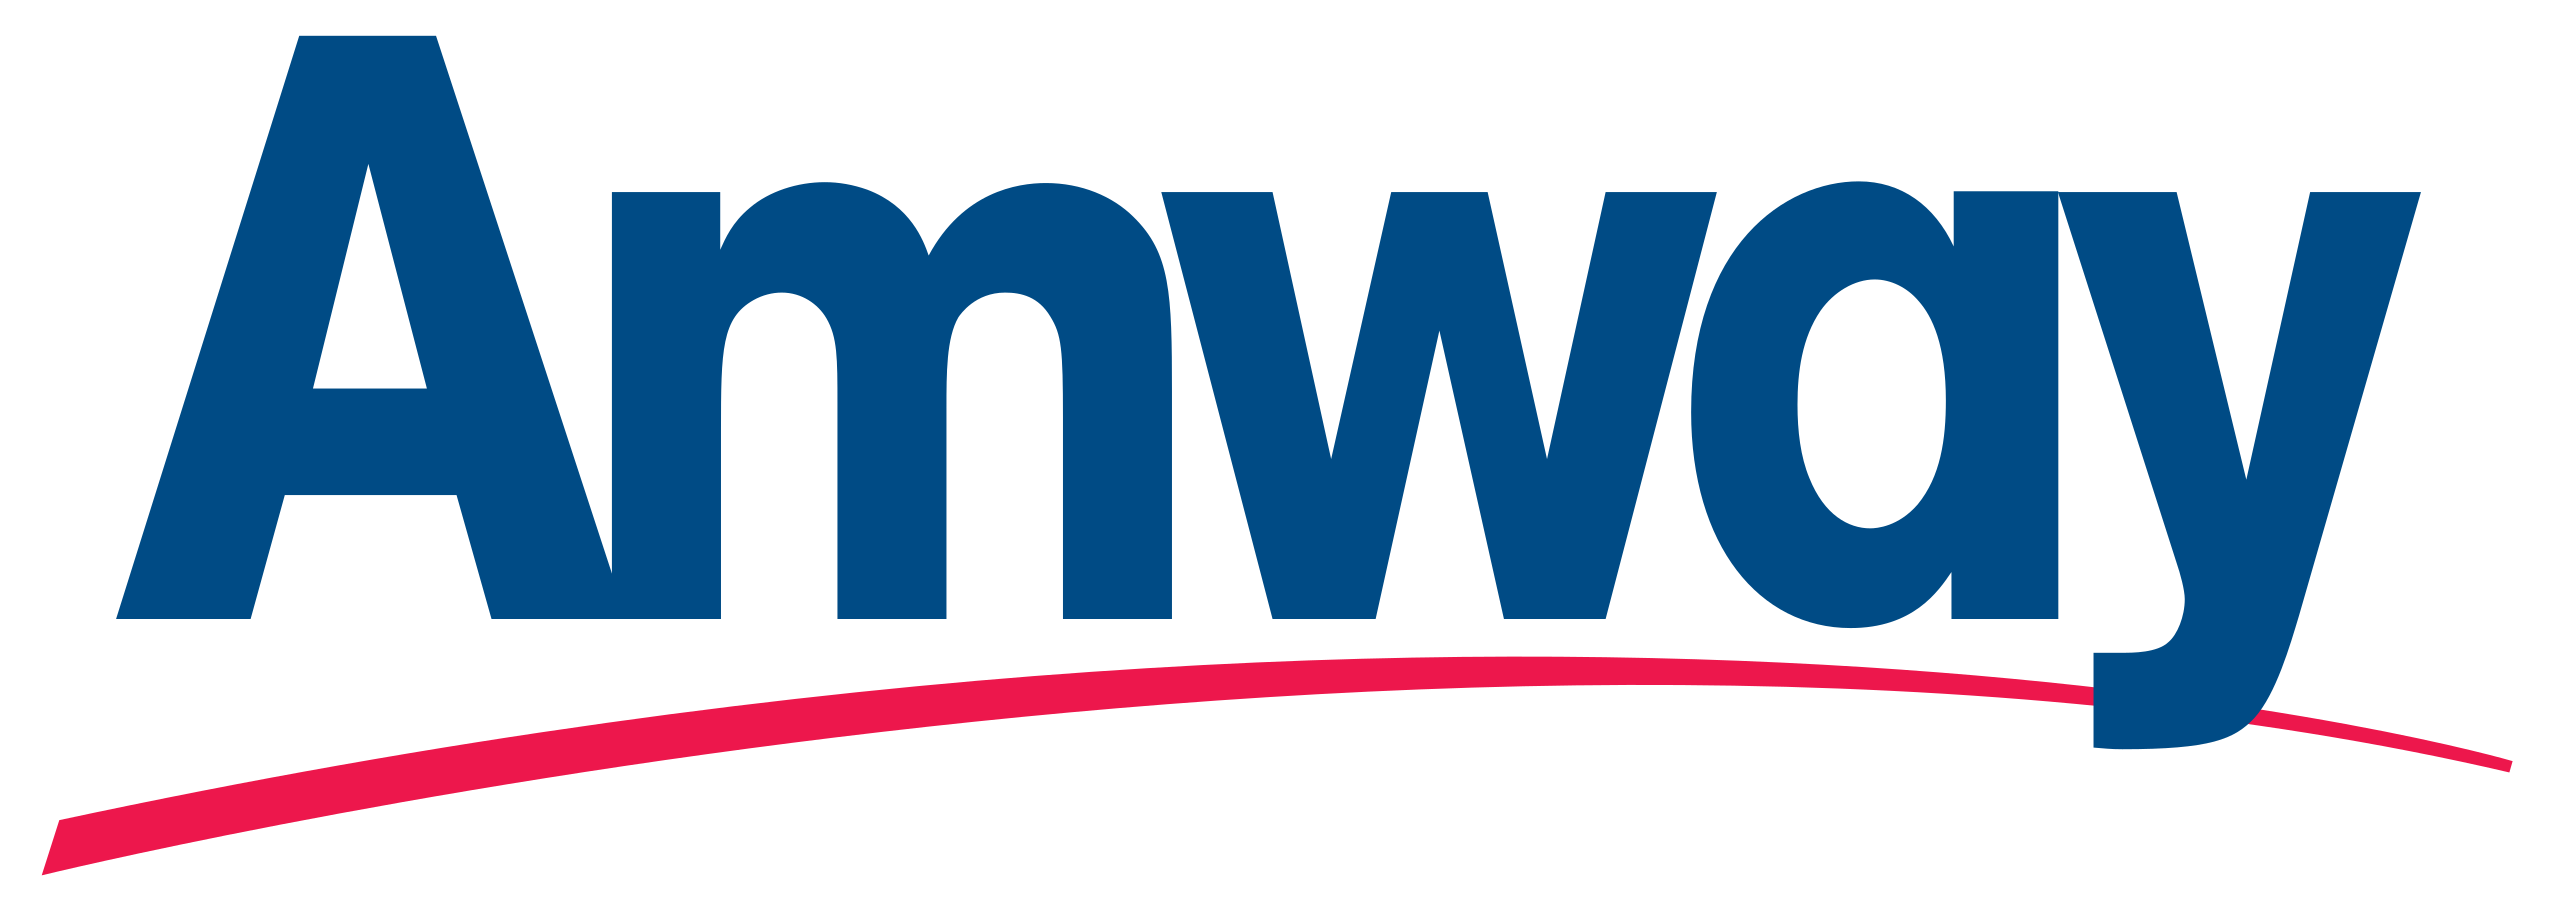 Amway_logo